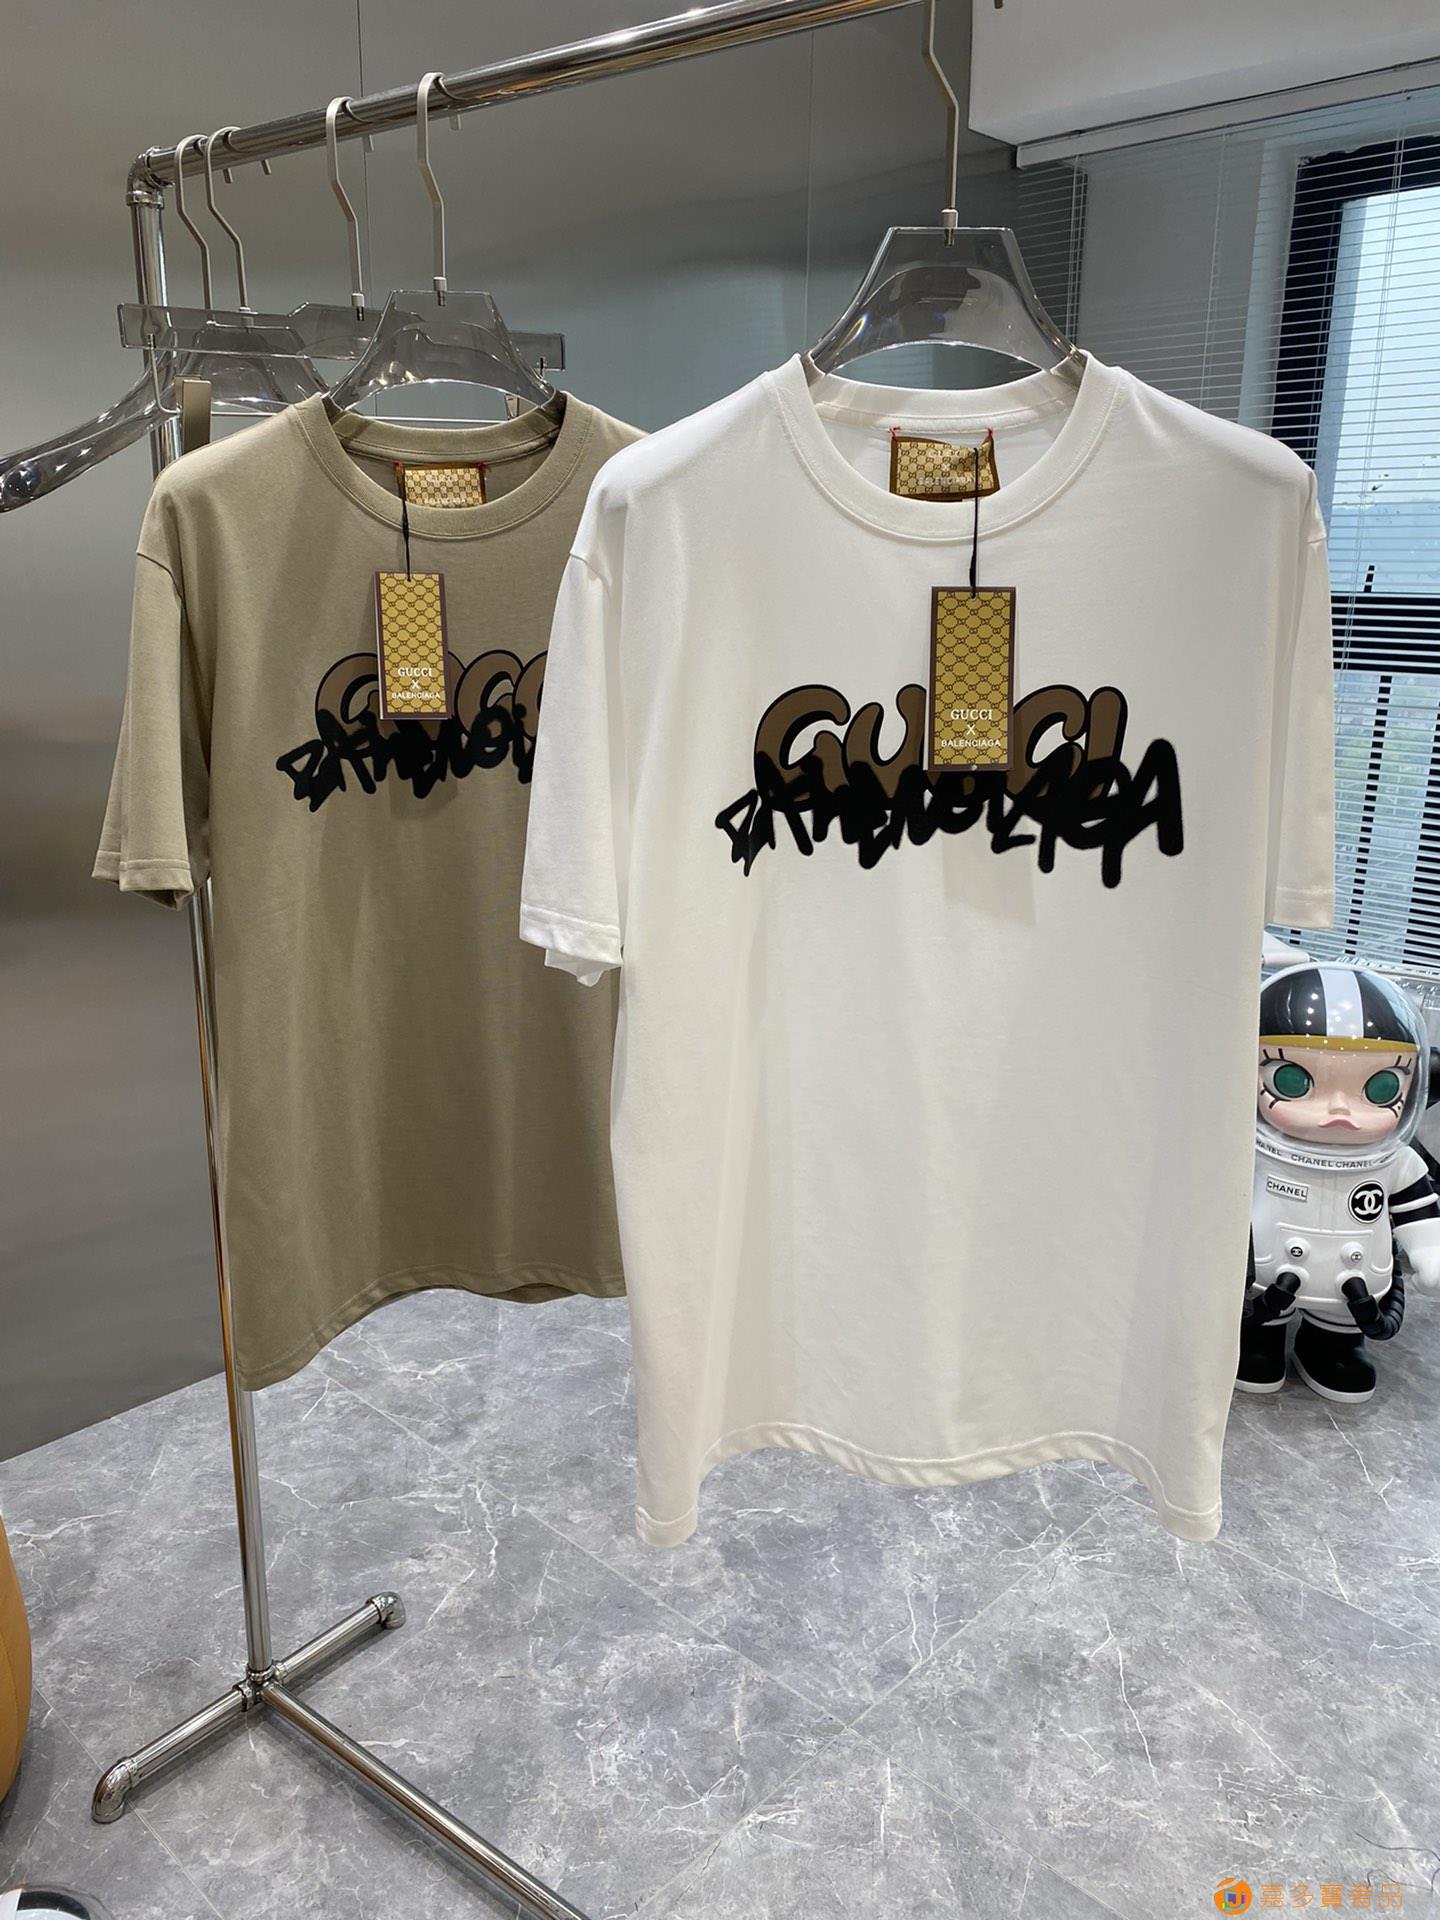 New 古奇春夏圆领短袖T恤,意大利原厂订单渠道,极具个性高